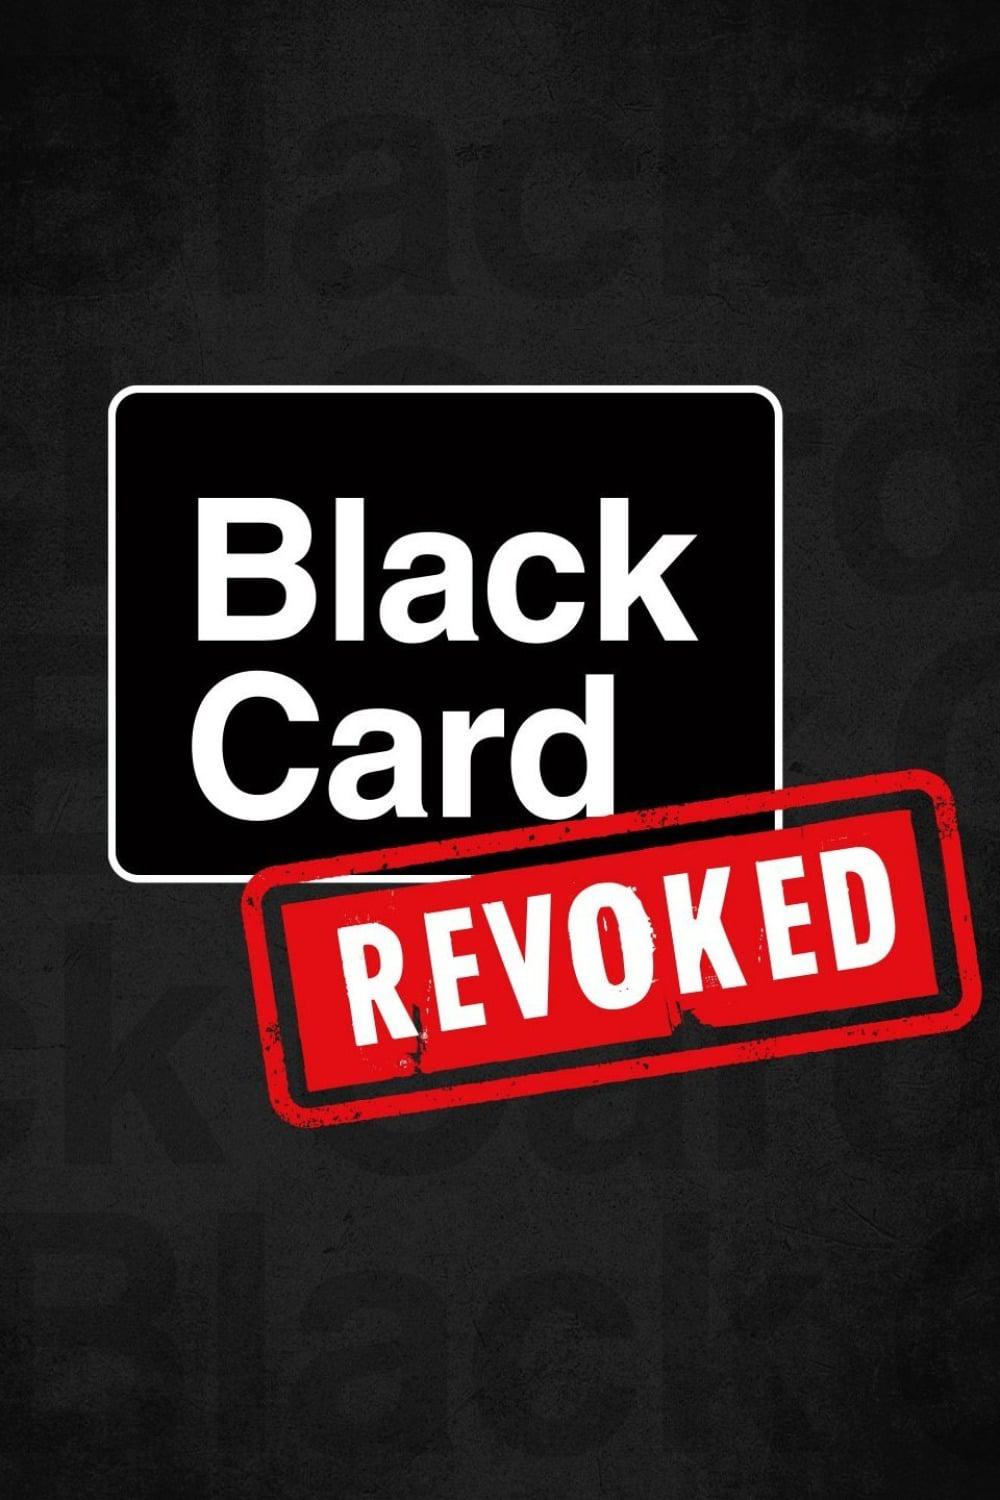 TV ratings for Black Card Revoked in Australia. bet TV series